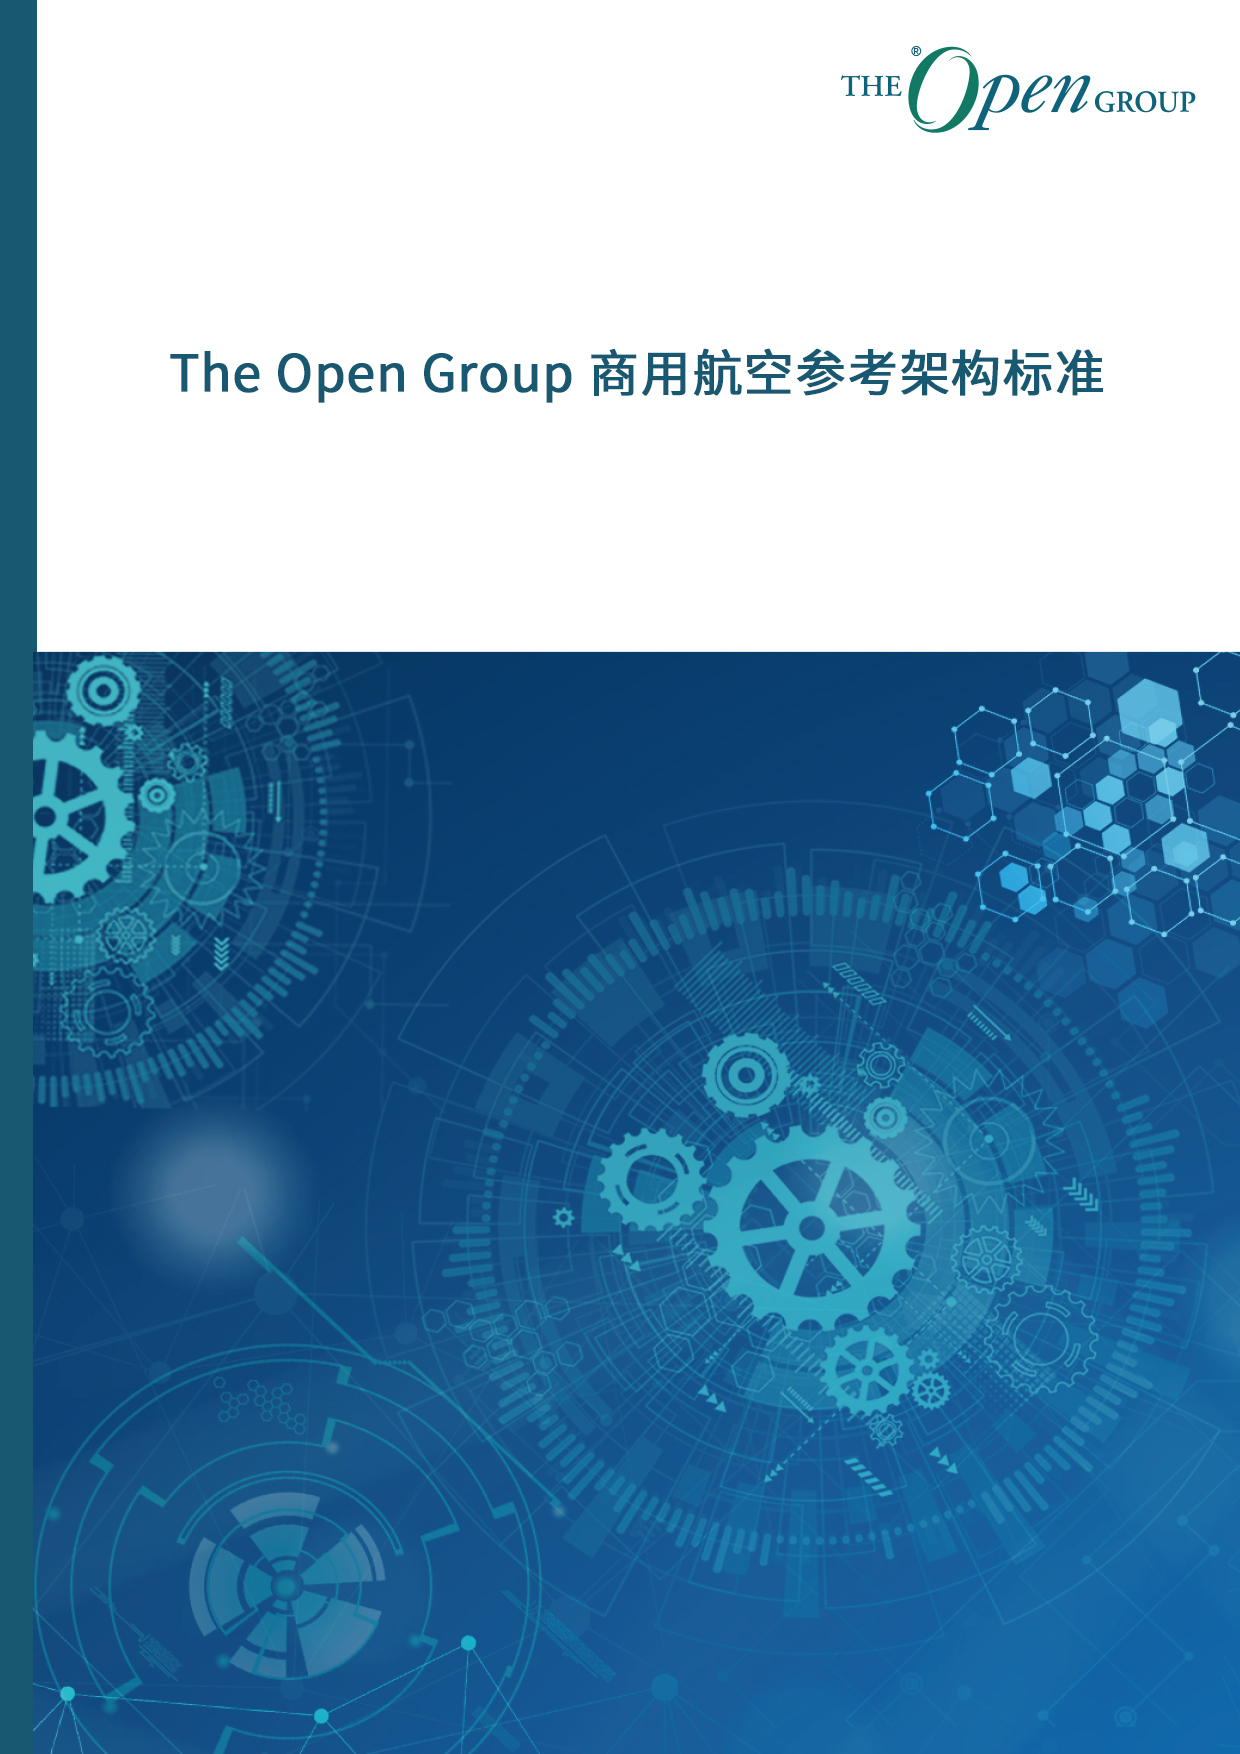 The Open Group 商用航空参考架构标准